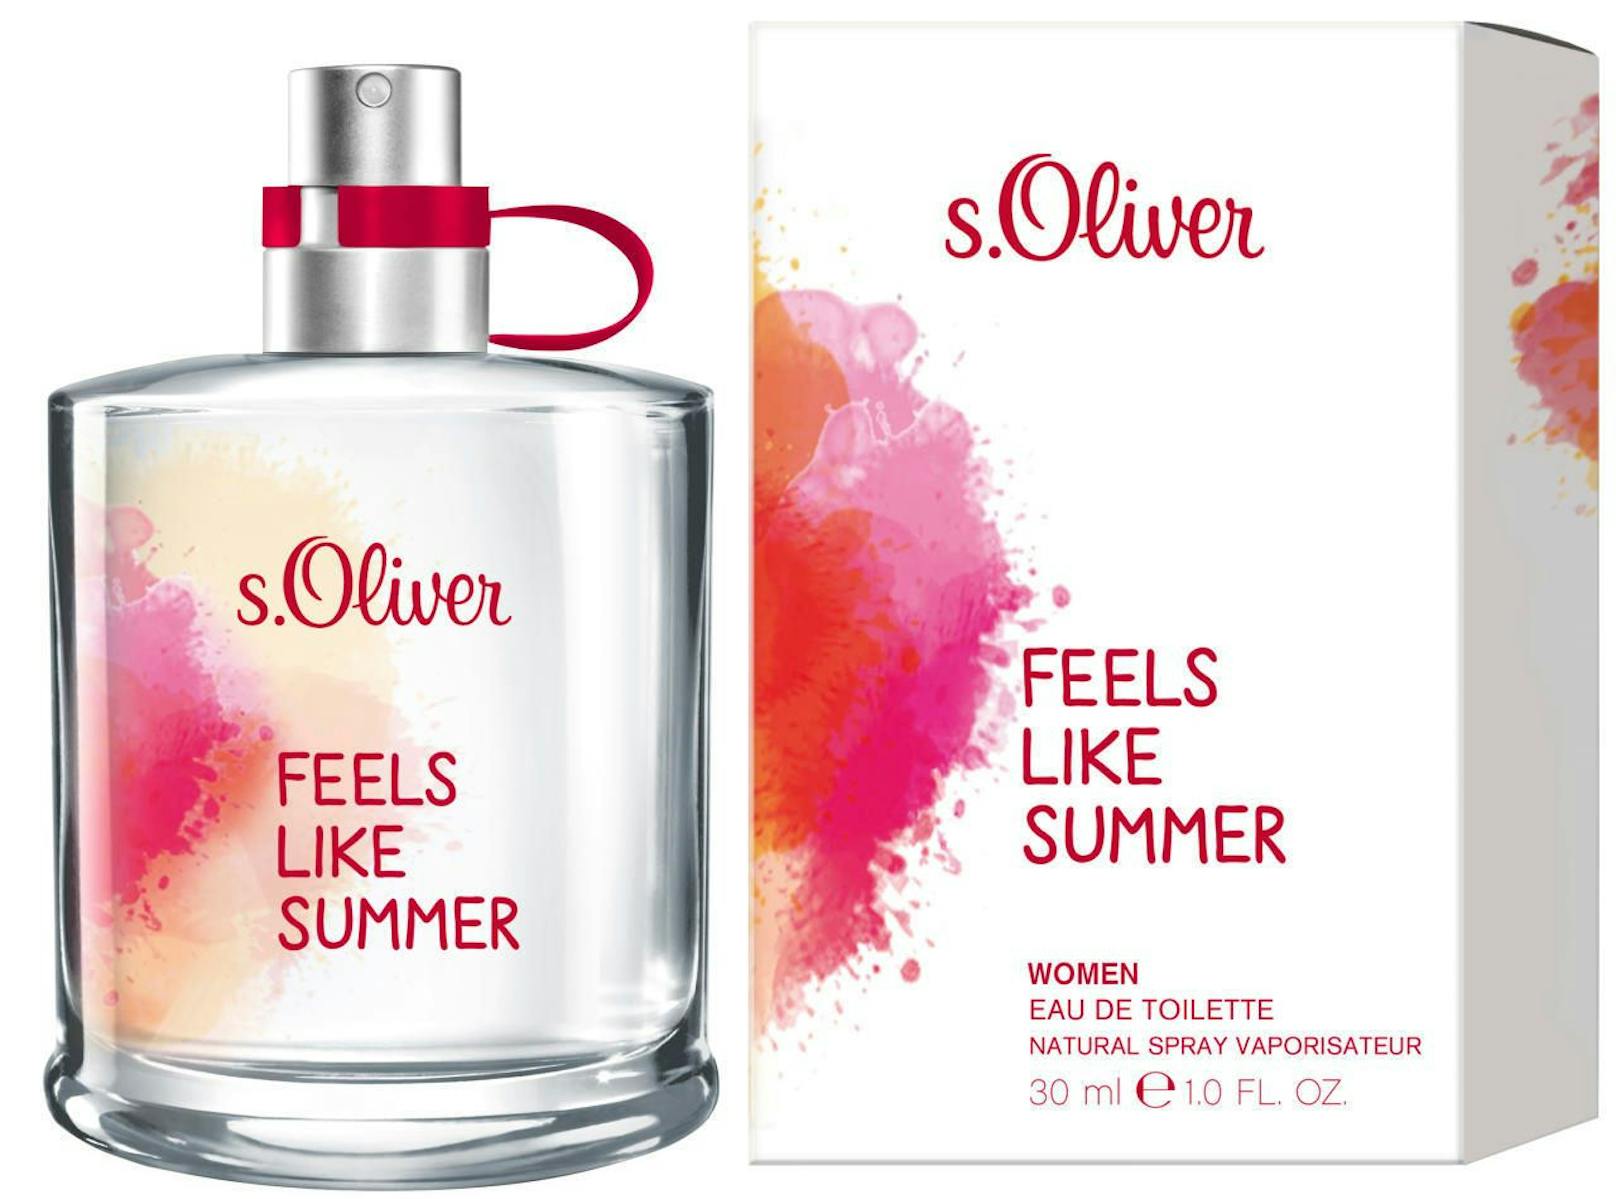 1 x s.Oliver "Feels Like Summer" Women Duft zu gewinnen